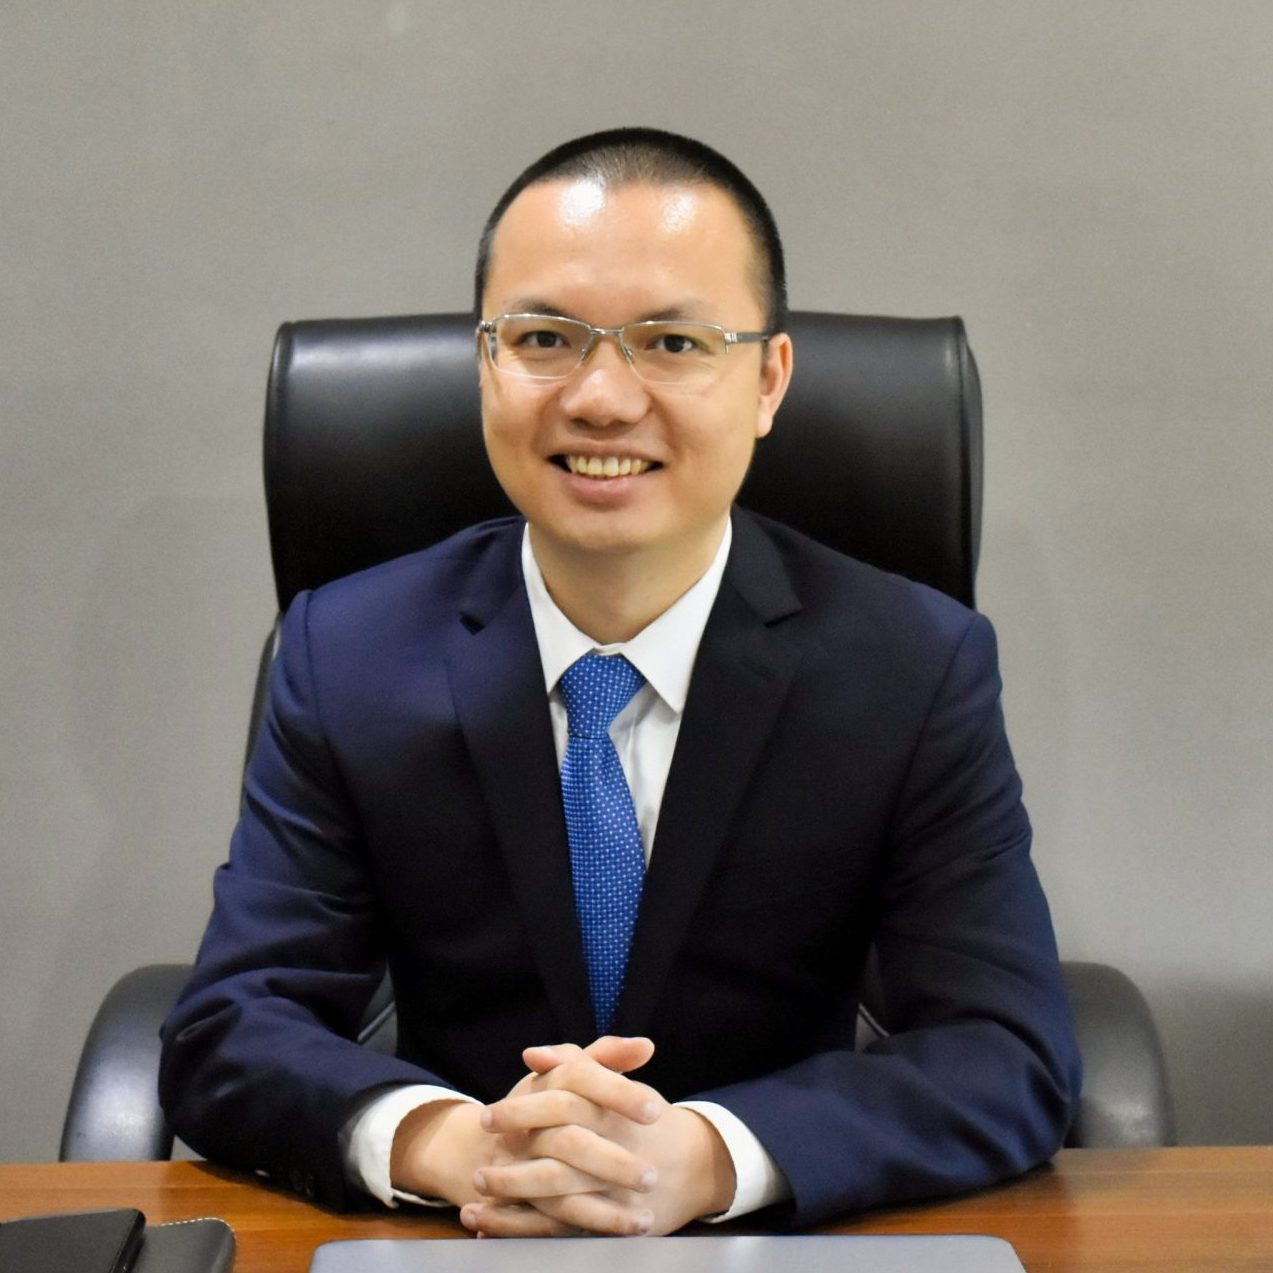 Mr. Trịnh Tùng Bách – Founder GBS Vietnam